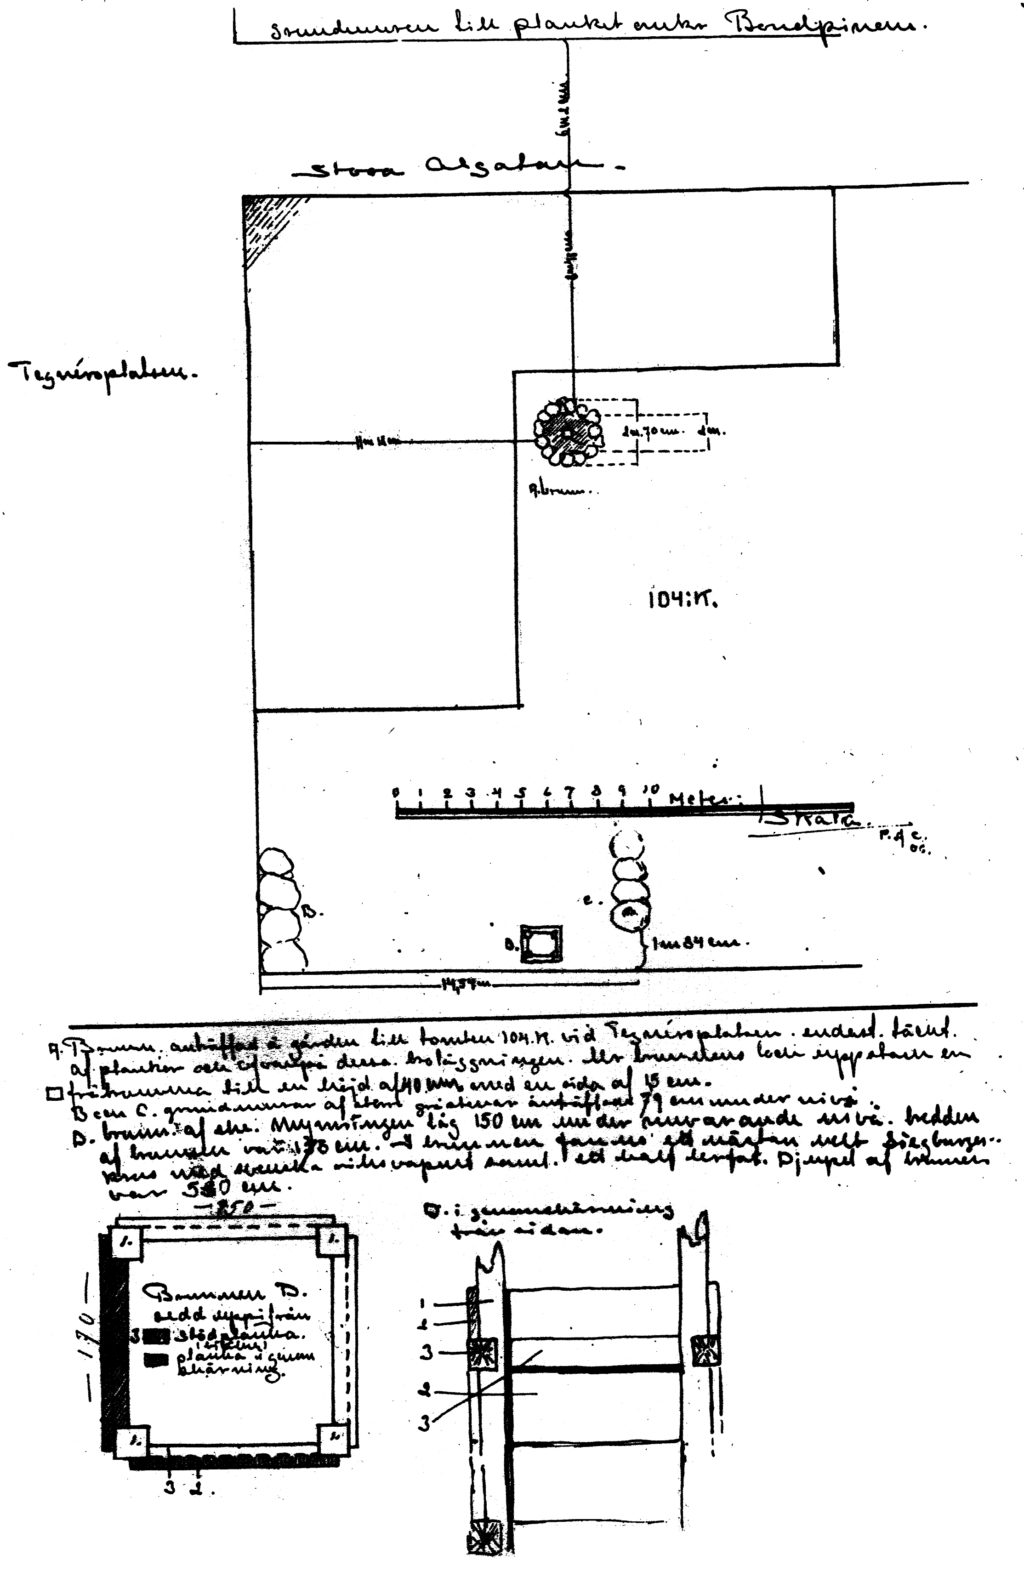 Figur. Planritning med några arkeologiska lämningar upprättad 1906 av P A Olsson i samband med uppförandet av Skånska Brands lokaler i kv. S:t Mikael 16. (Kulturens LA-arkiv).